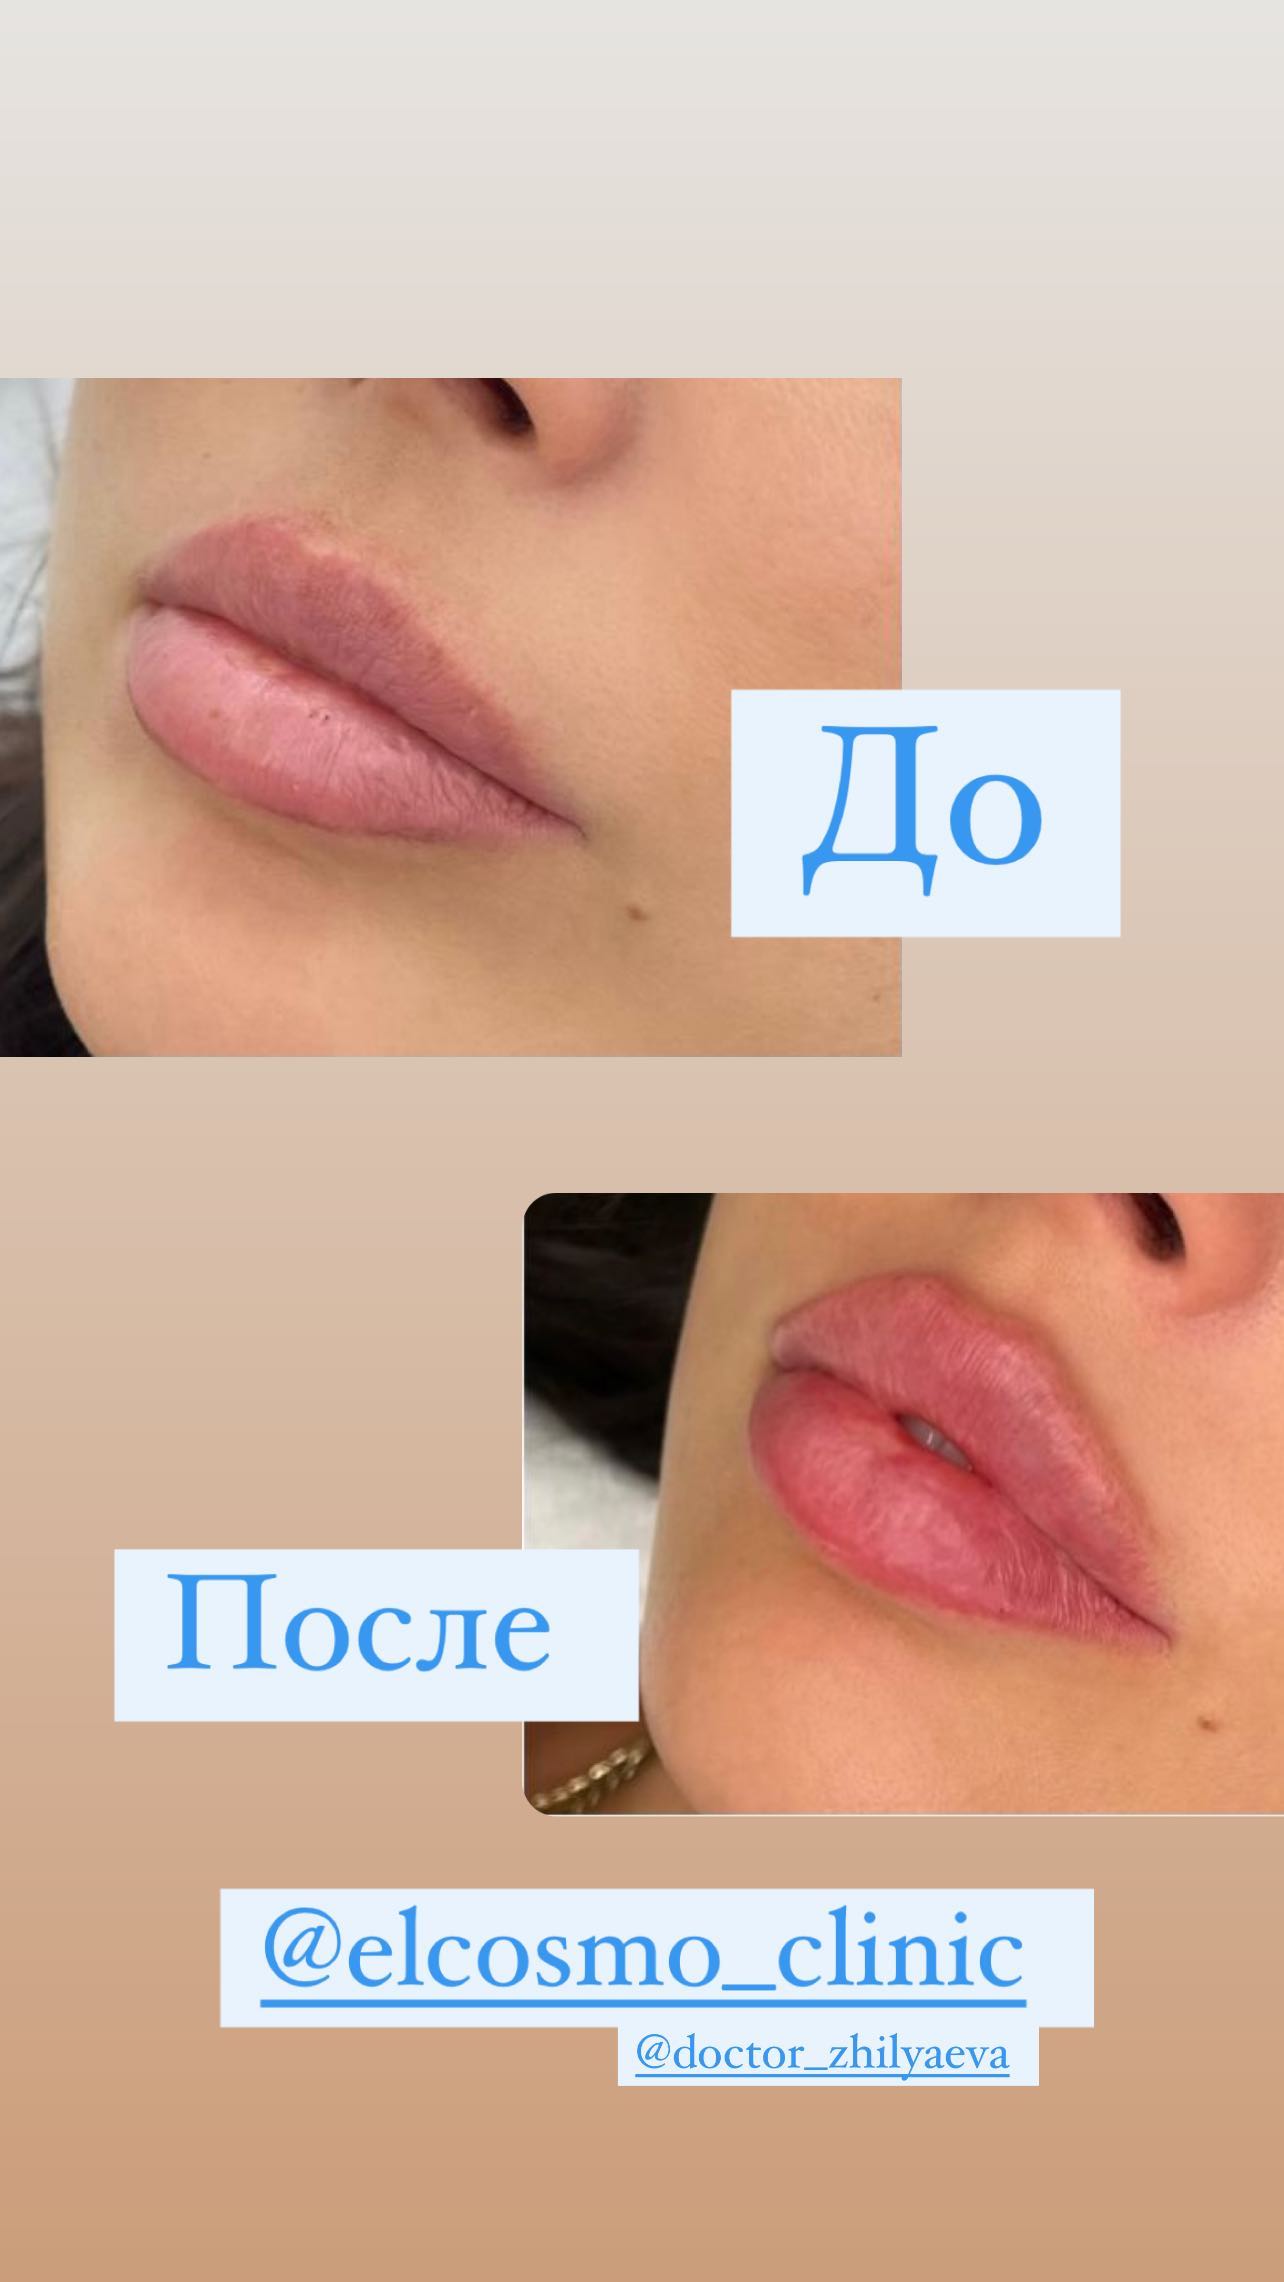 "Что-то изменилось?": Оксана Самойлова показала результат переделанных губ



